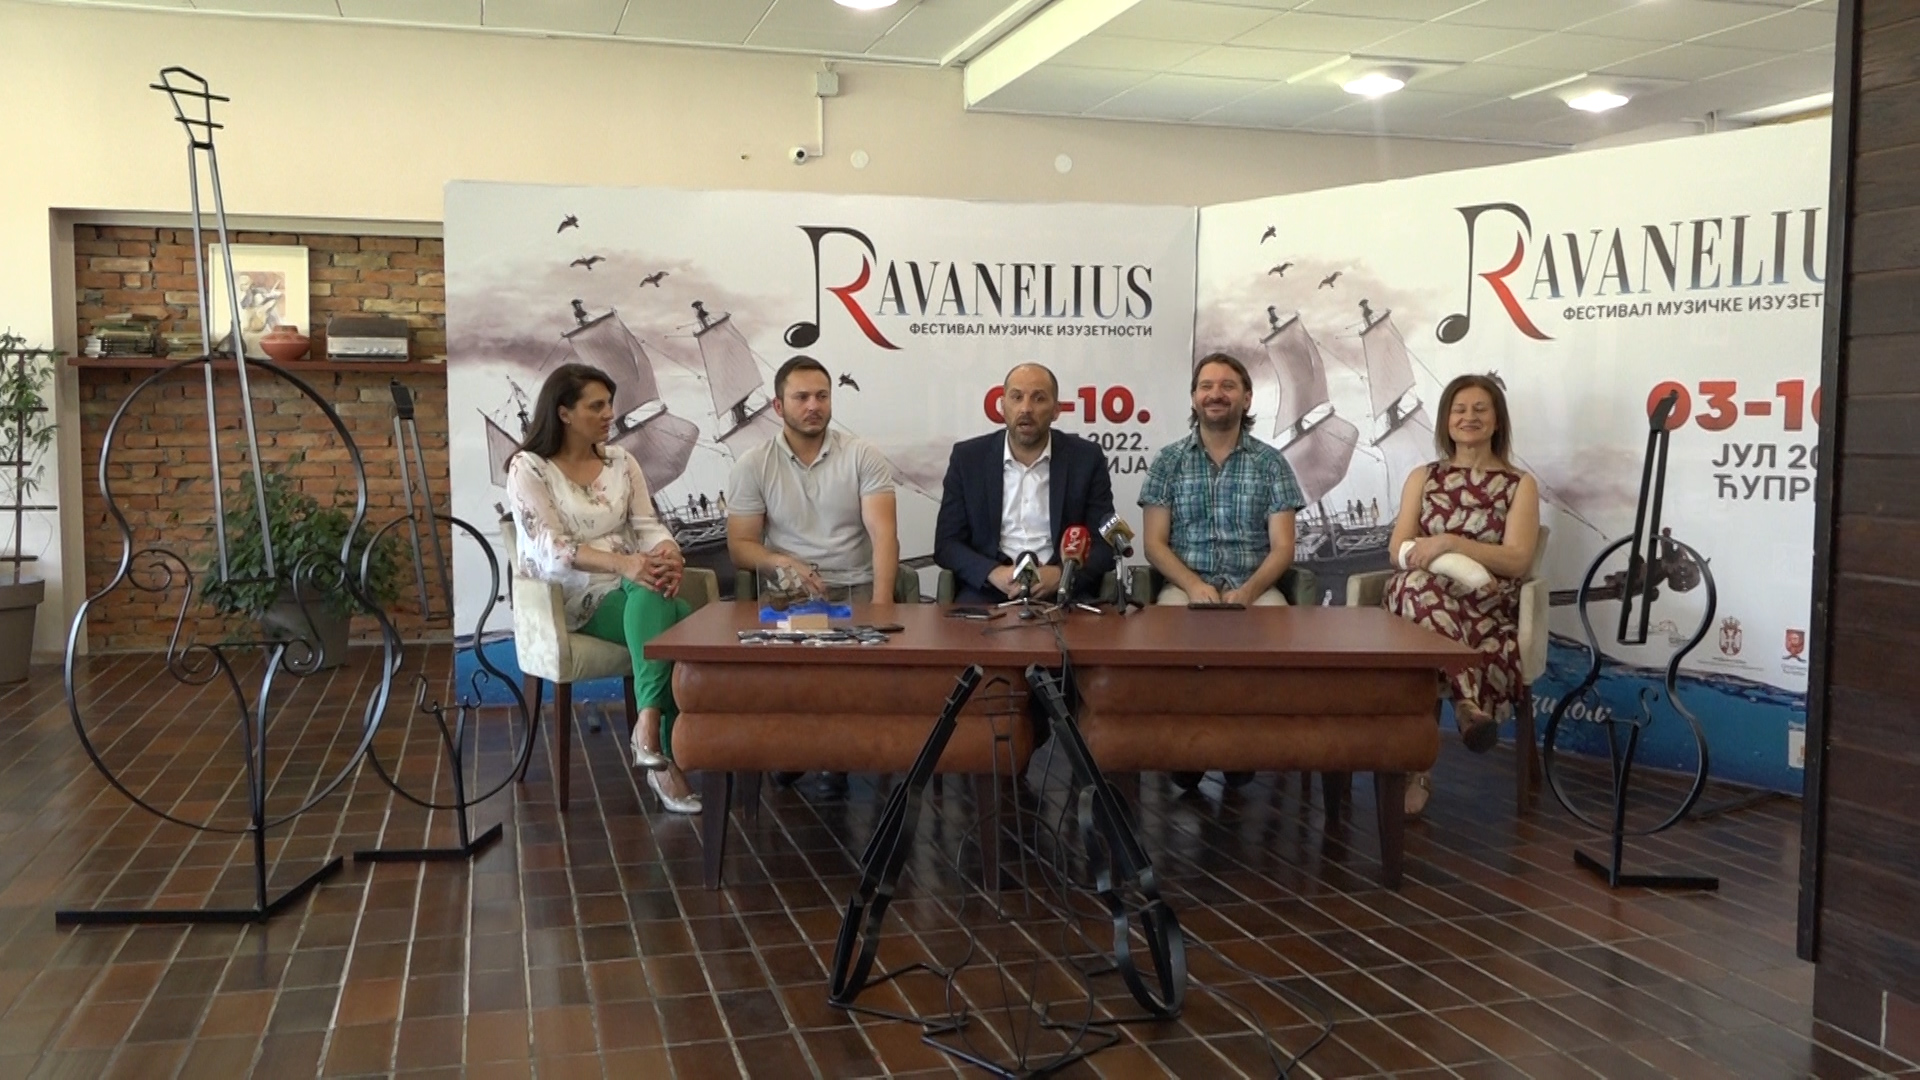 Najavljen bogat program na Festivalu muzičke izuzetnosti „Ravanelius“